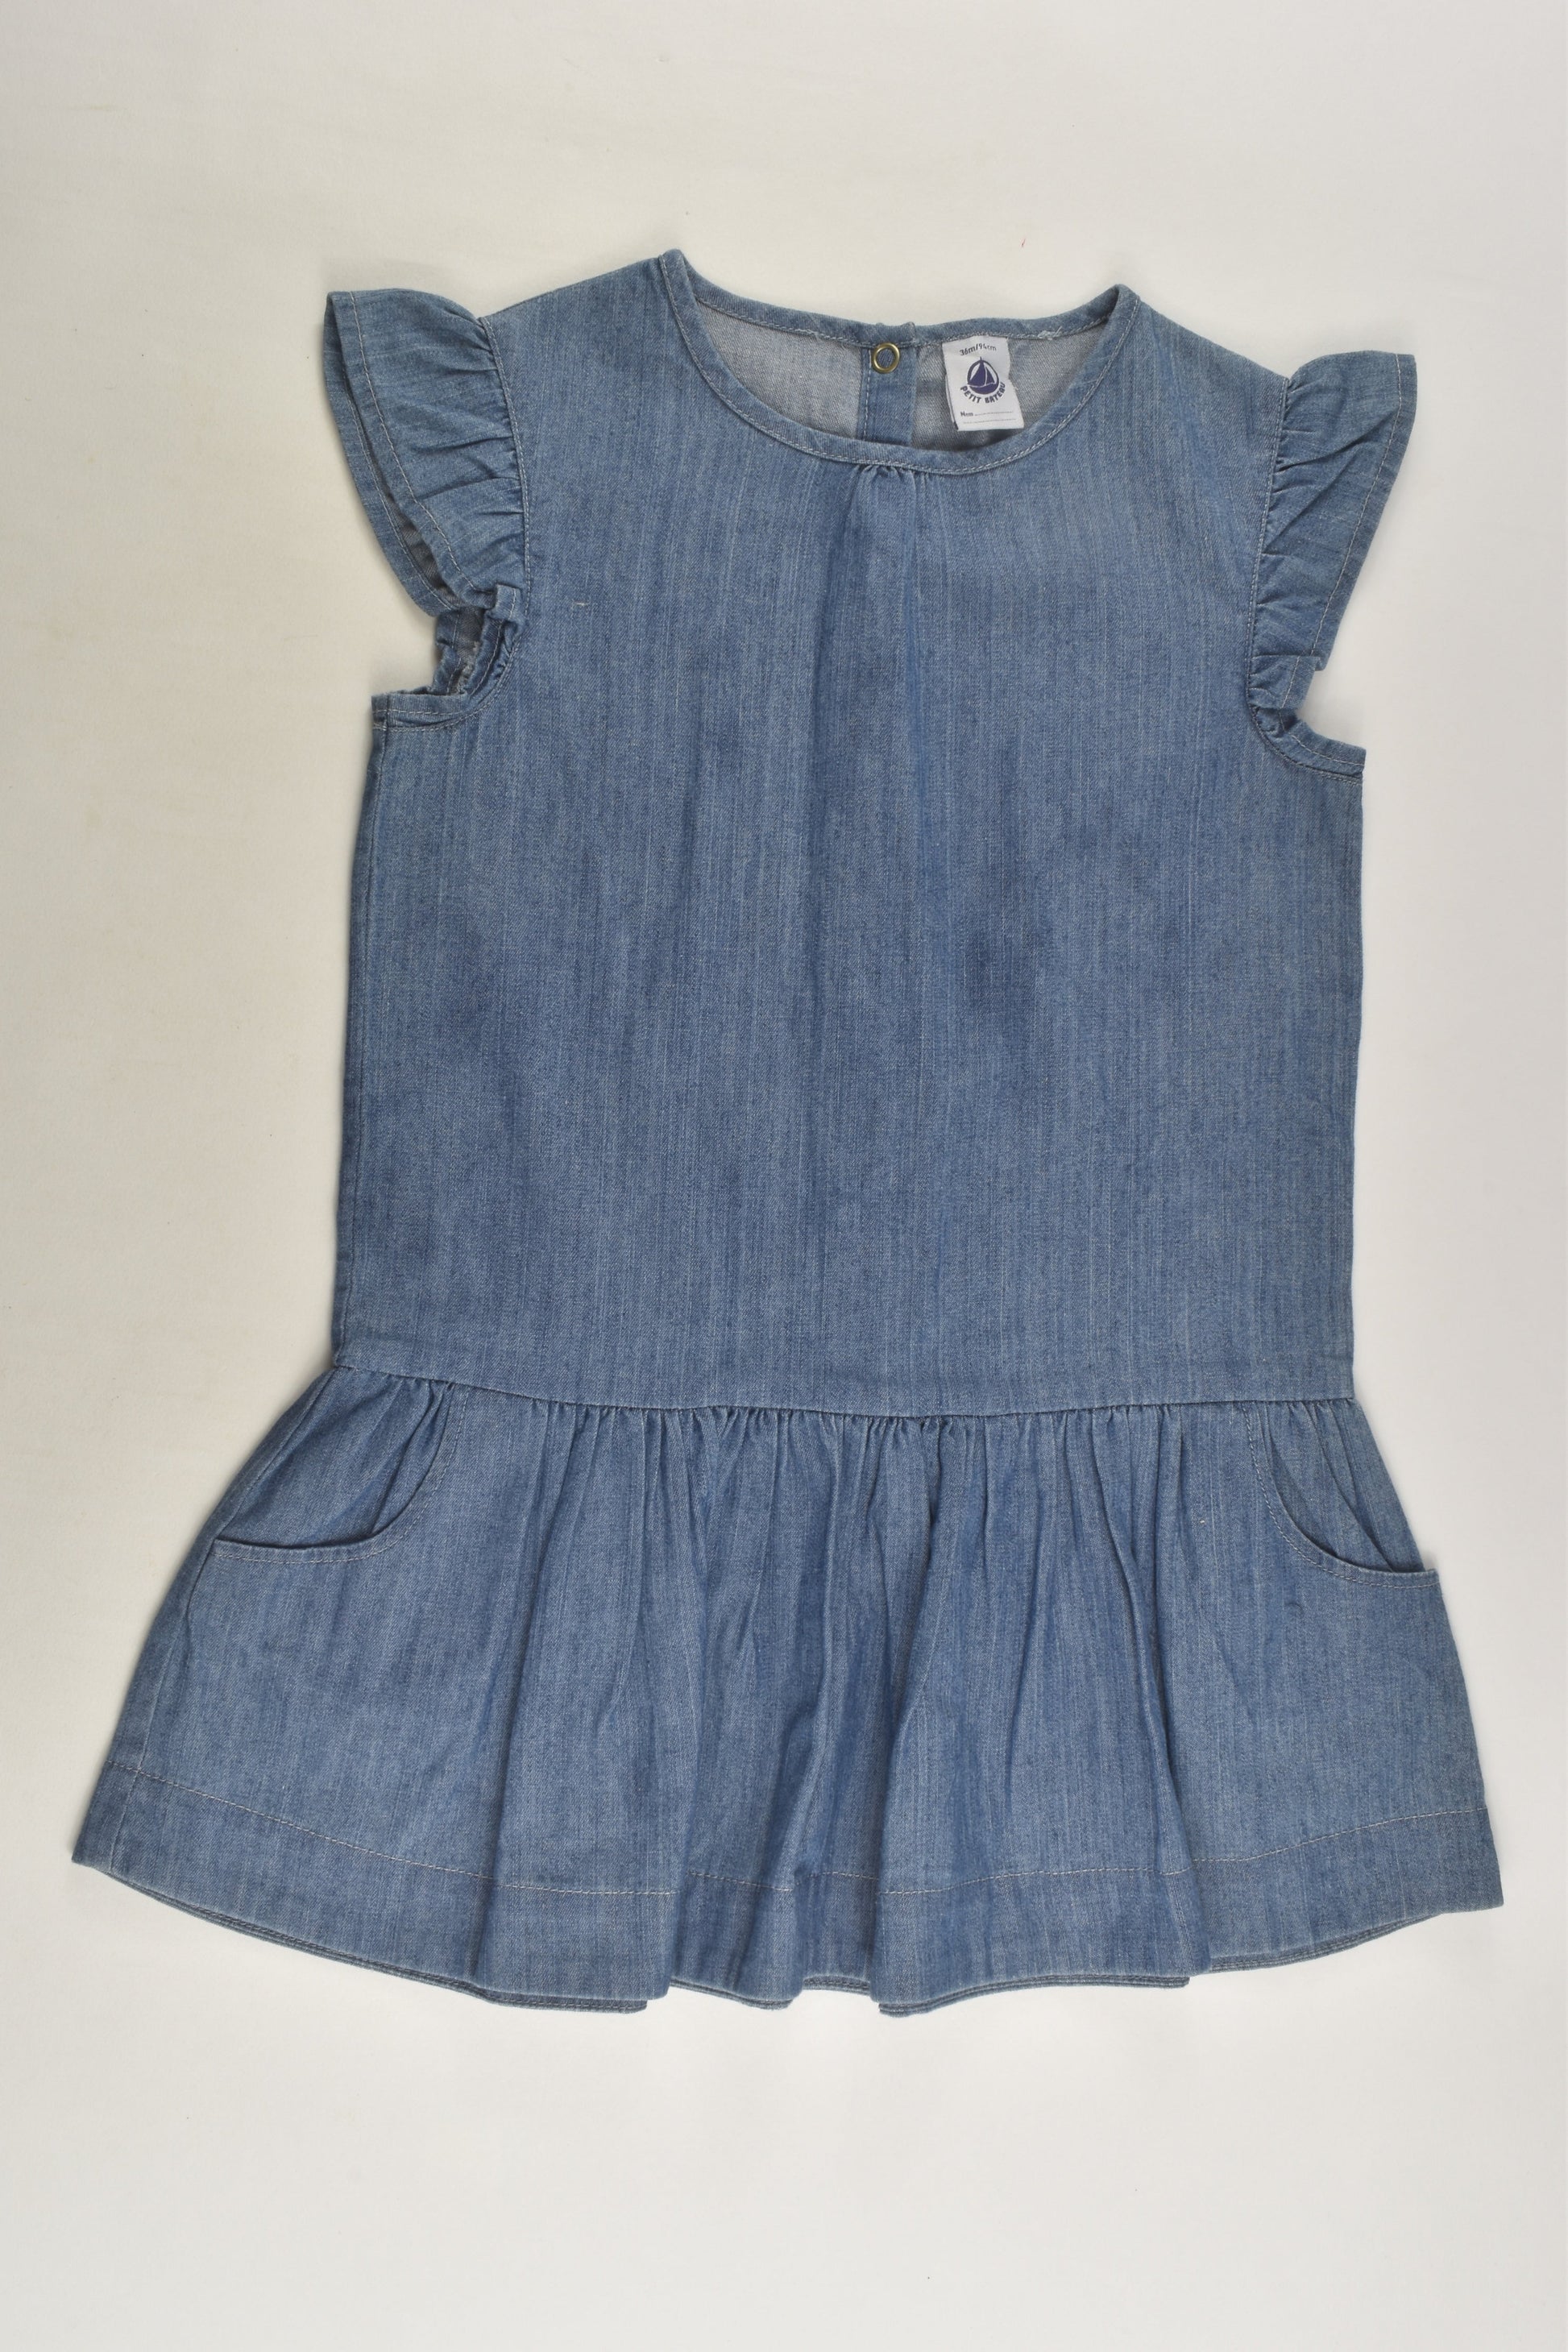 Petit Bateau Size 2-3 (36 months, 94 cm) Denim Dress